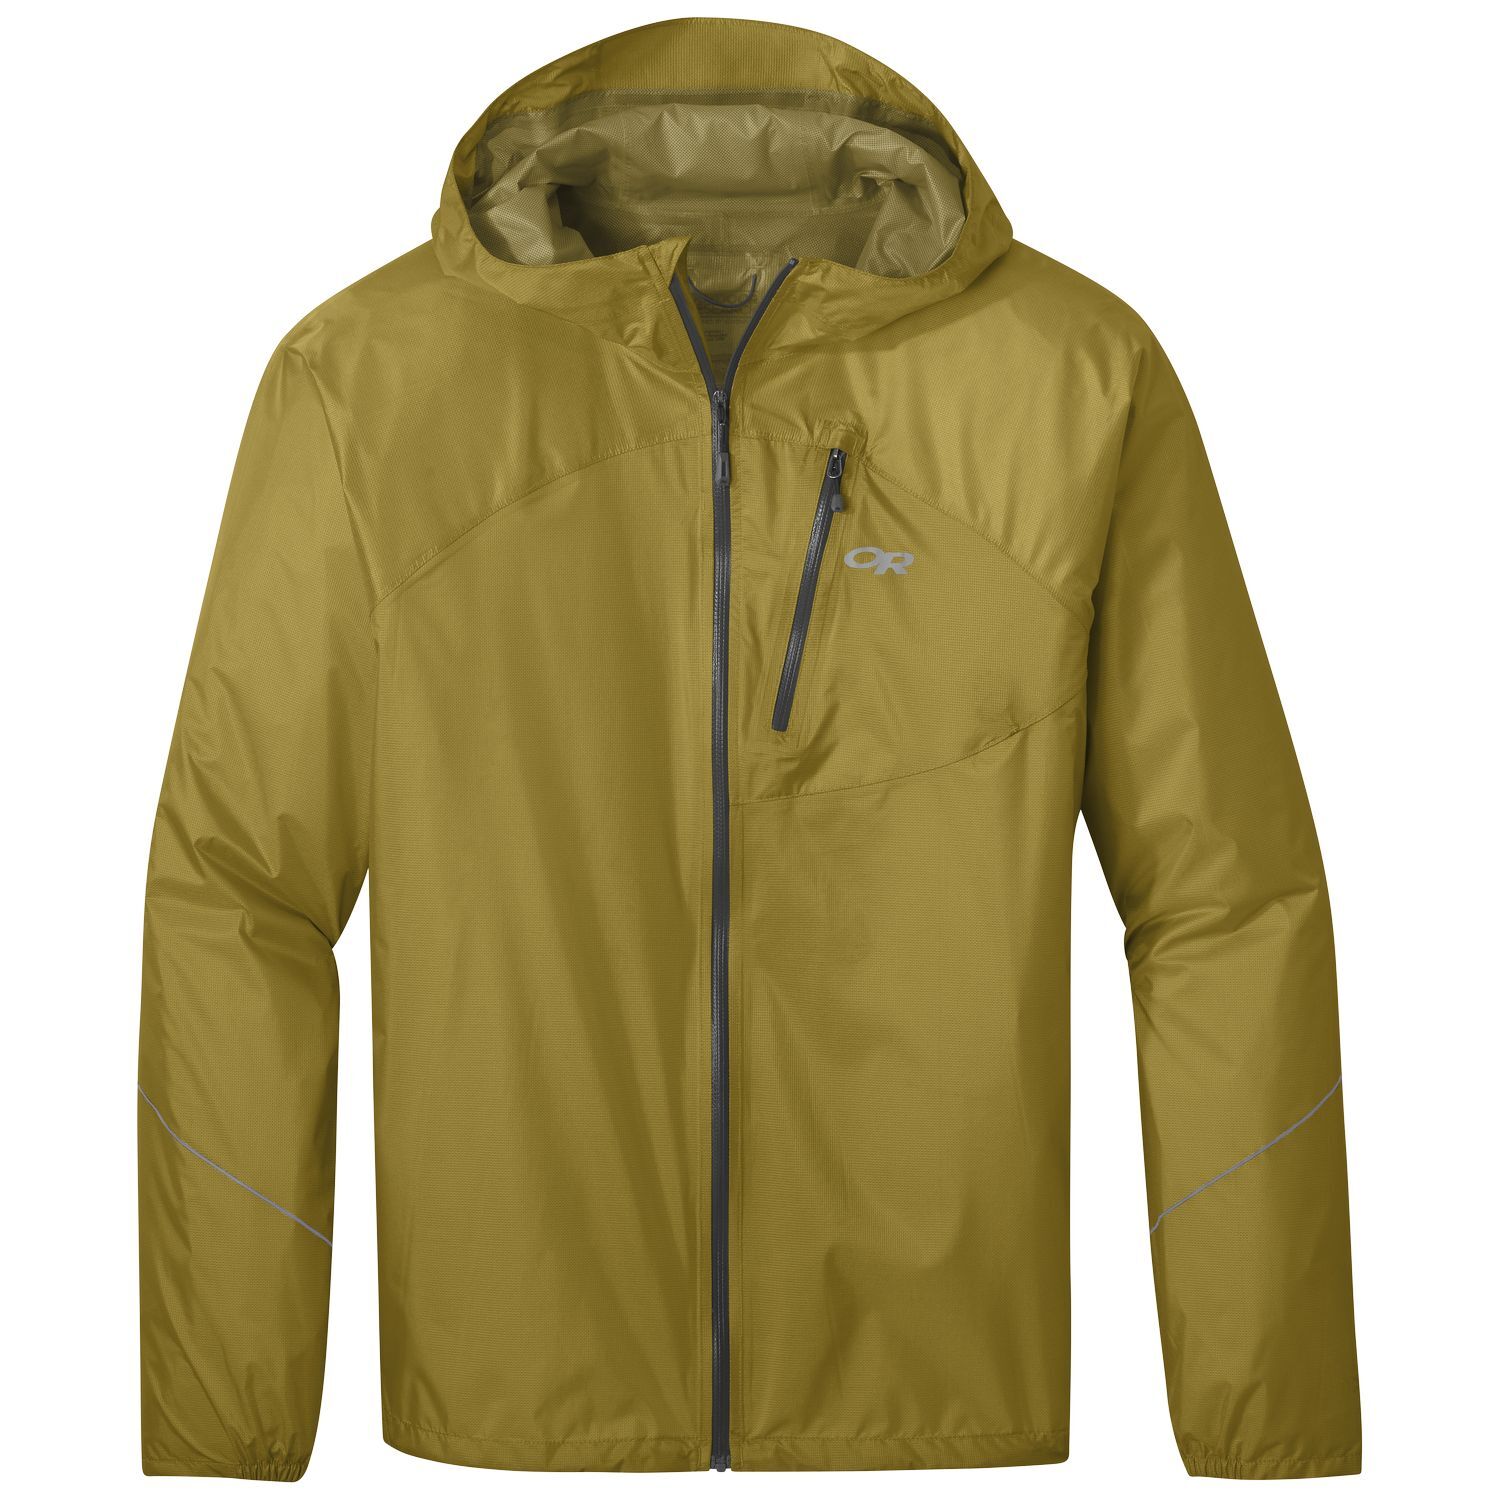 Outdoor Research Helium Rain Jacket - Waterproof jacket - Men's